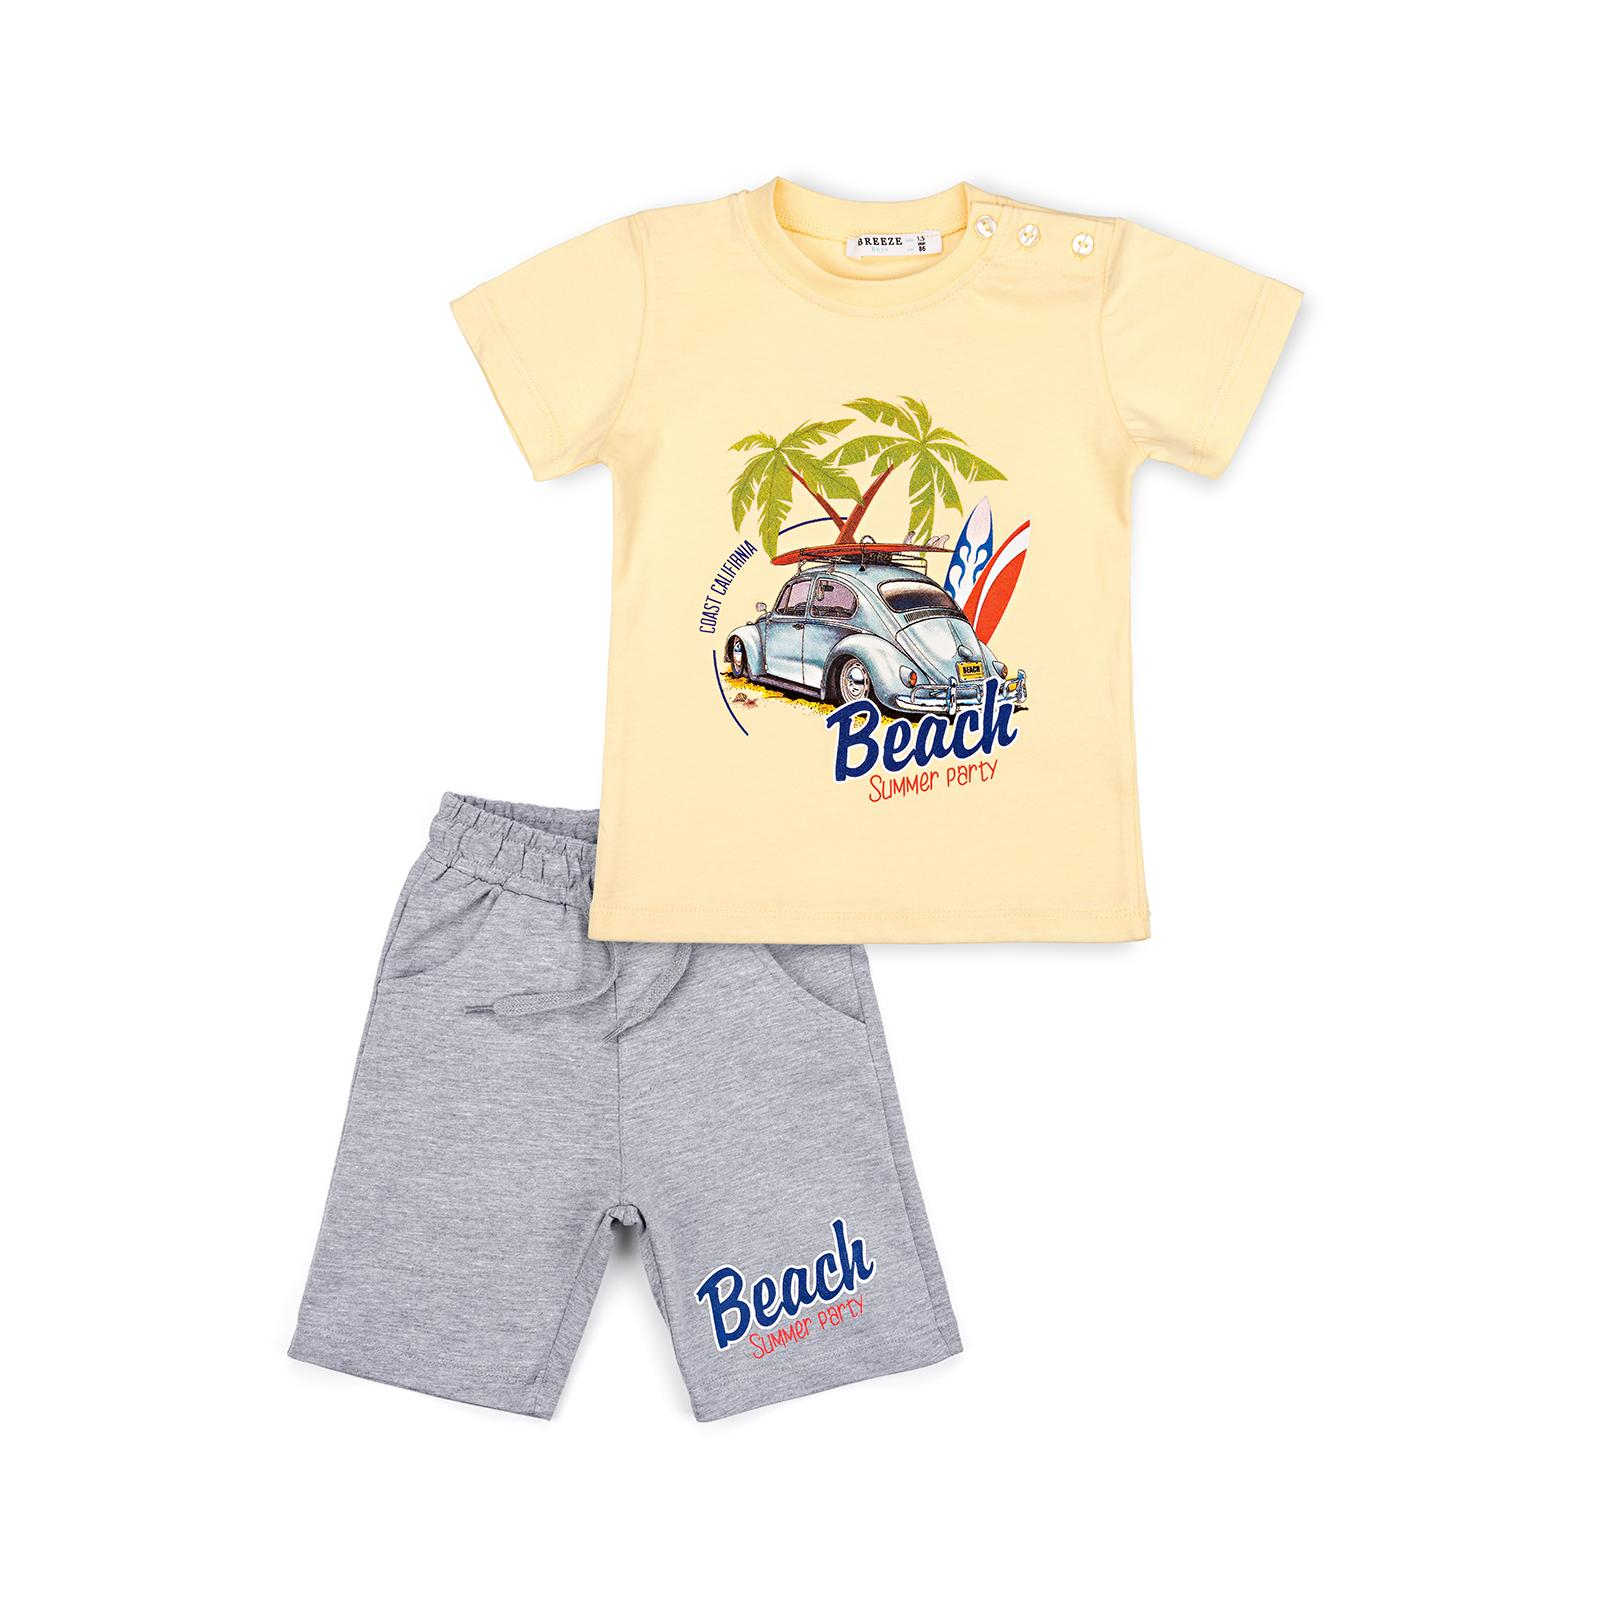 Набор детской одежды Breeze с машинкой (10940-92B-blue)